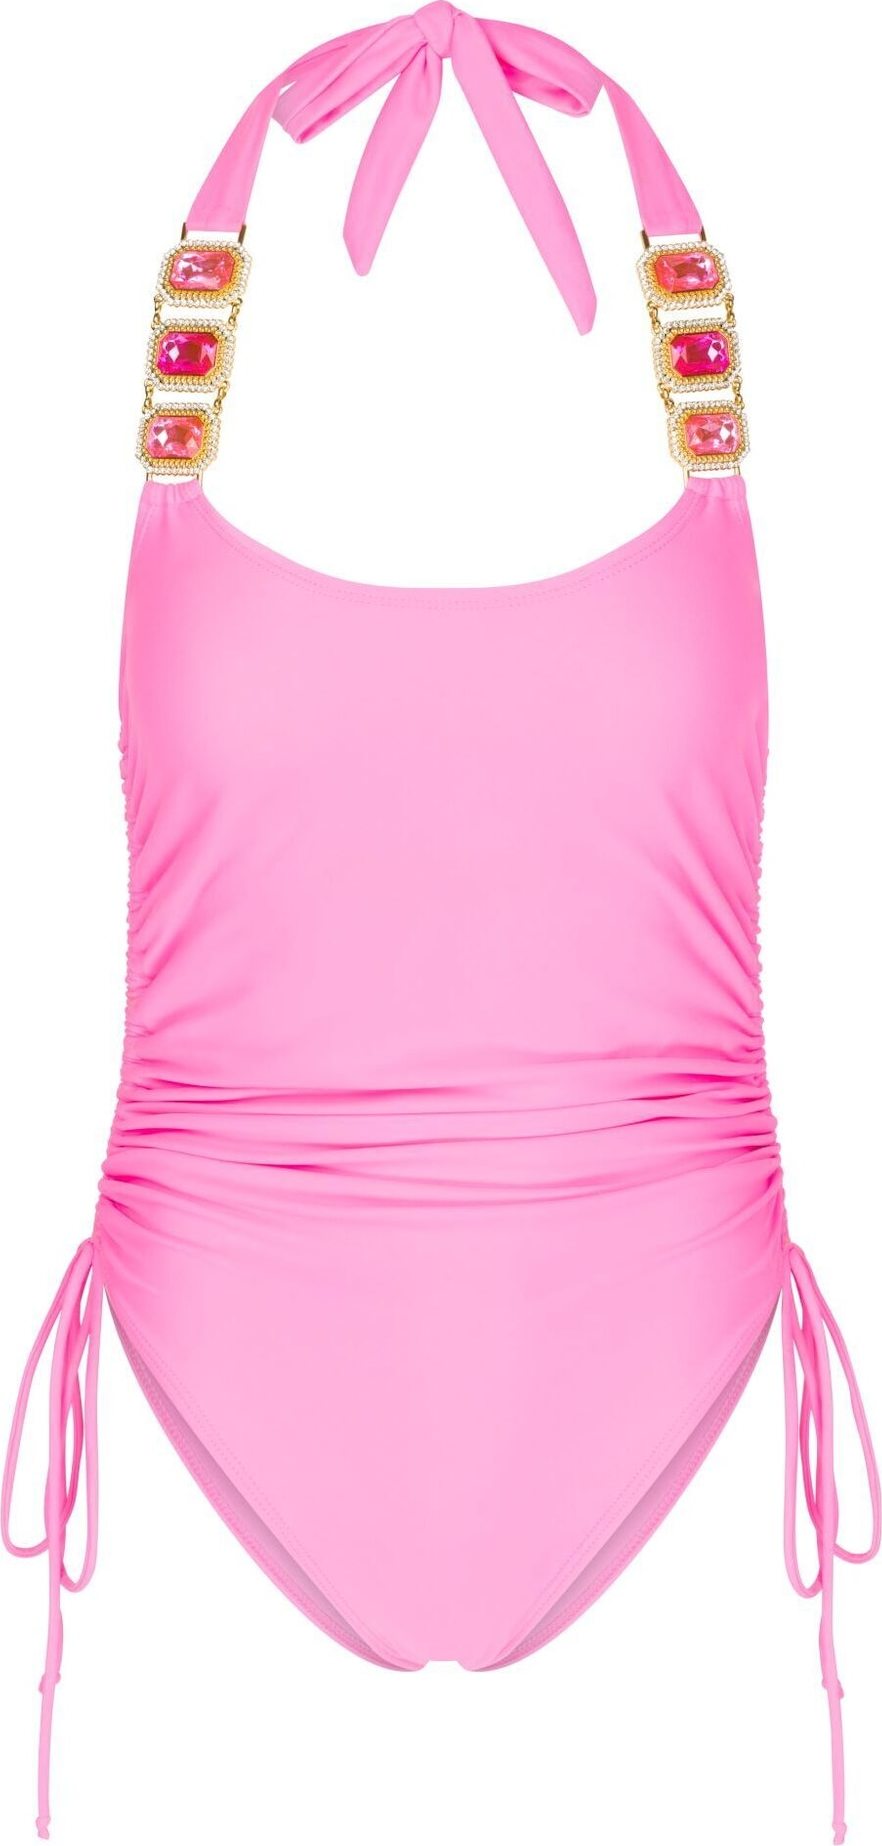 Moda Minx Plavky světle růžová